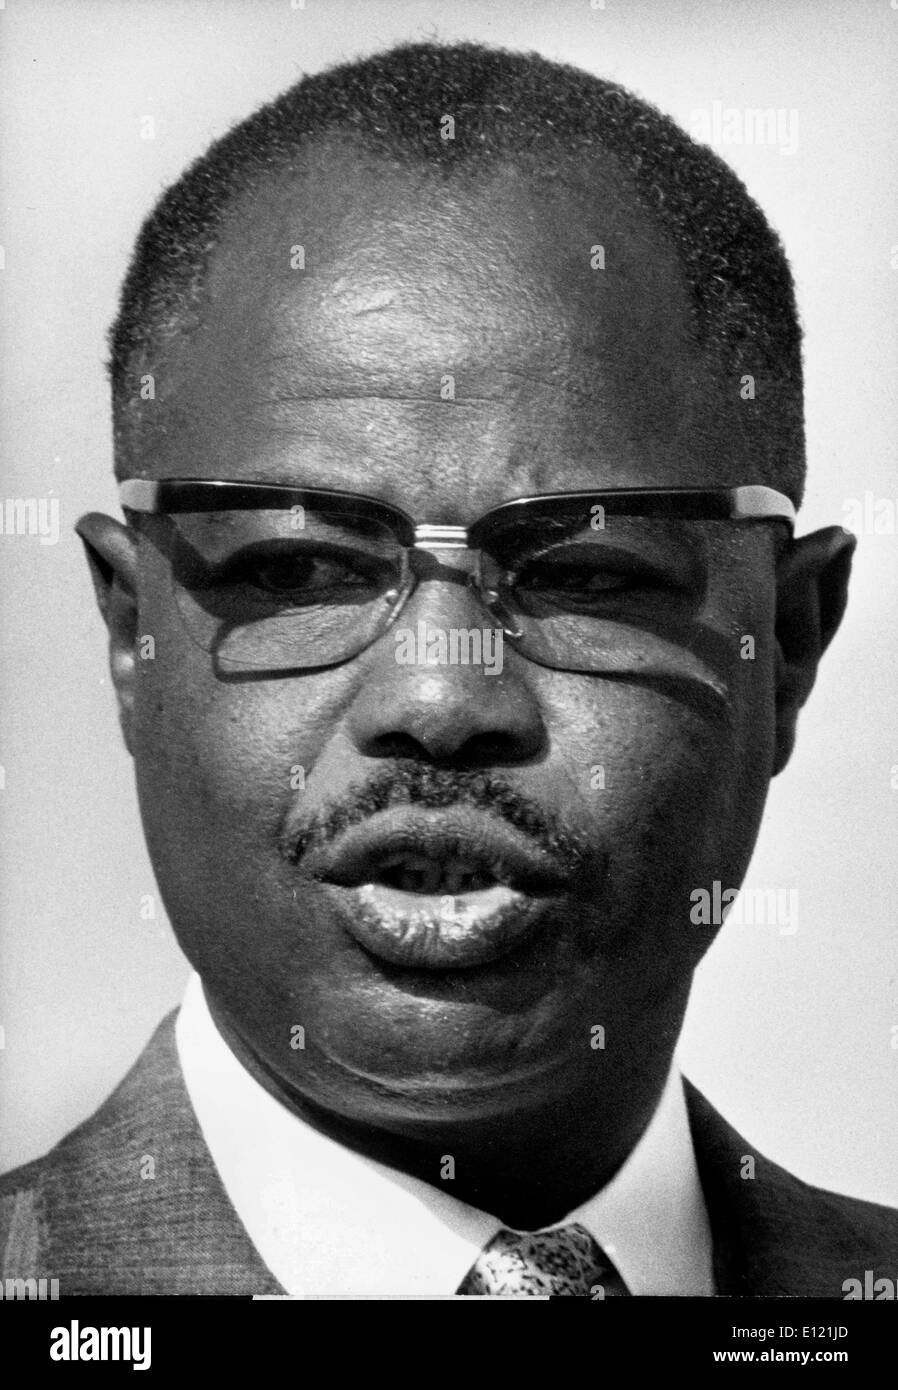 07 nov 1981; Yaoundé, in Camerun; AHMADOU AHIDJO BABATOURA 24 agosto 1924 Novembre 30 1989 è stato il presidente del Camerun dal 1960 fino al 1982, quando il Camerun ha ottenuto l'indipendenza nel 1960. È stato rieletto nel 1965, 1970, 1975 e 1980. Egli ha sperimentato una ribellione negli anni sessanta. Nei primi anni settanta ha creato un impopolare costituzione che si è conclusa l'autonomia del British Camerun e stabilito regola unitaria. Anche se molte delle sue azioni sono stati dittatoriali, il suo paese è diventato uno dei th più stabile in Africa. (Credito Immagine: KEYSTONE Pictures USA/ZUMAPRESS.com) Foto Stock